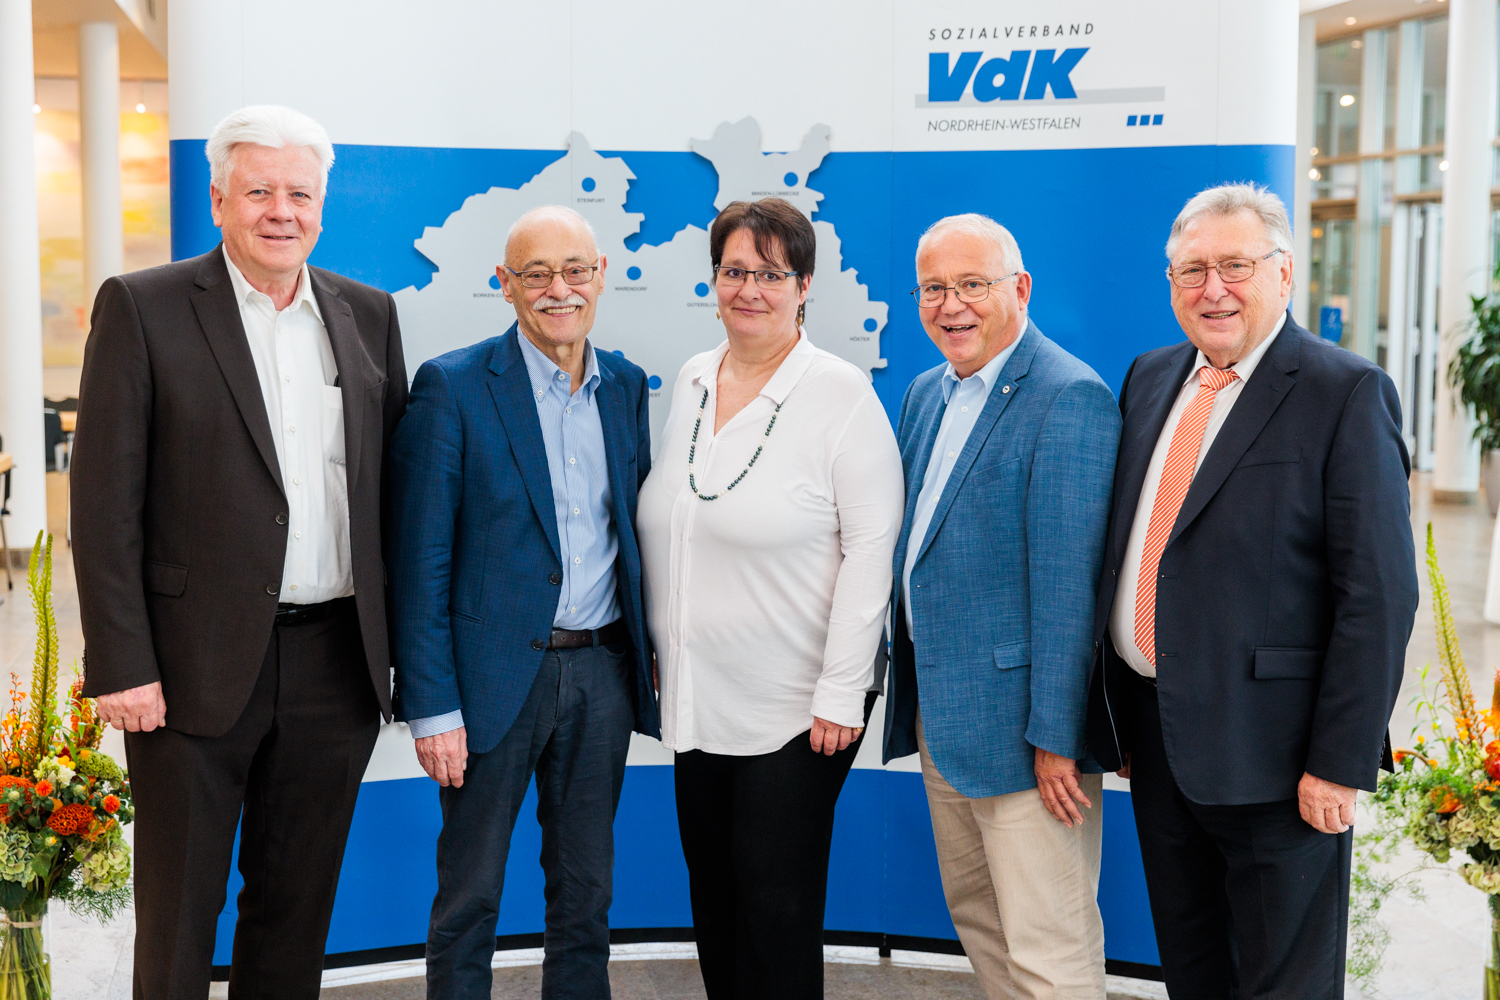 Das geschäftsführende Präsidium: Peter Jeromin (Vize-Präsident, von links), Horst Vöge (Präsident), Katharina Batz (Vize-Präsidentin), Wilfried Böhm (Schriftführer) und Josef Weiner (Schatzmeister).